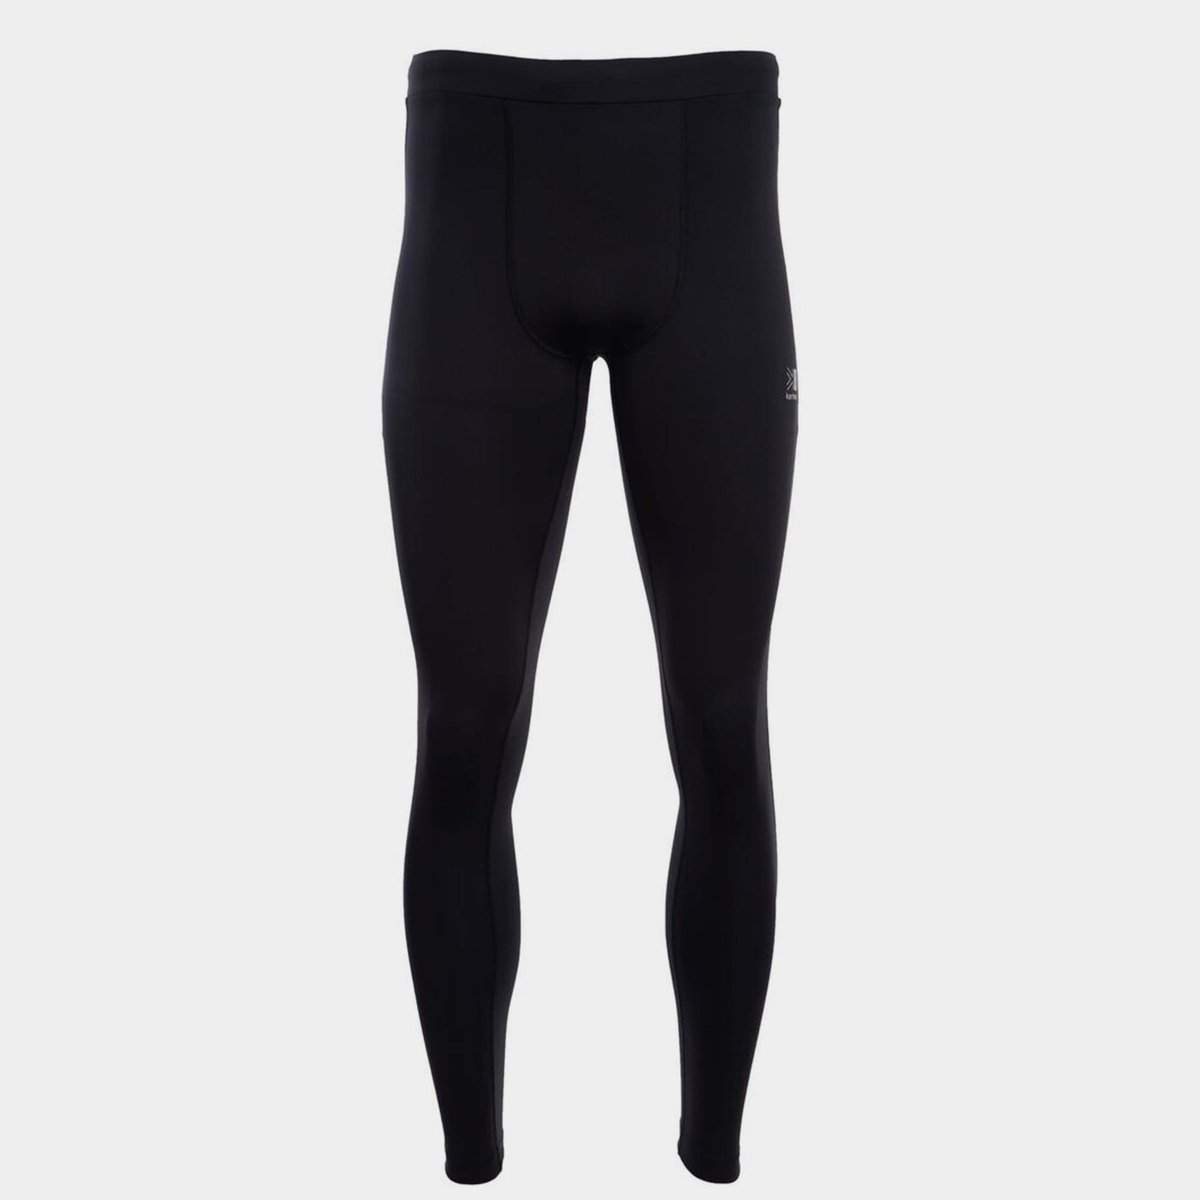 Karrimor Run X-Lite Women's Running Leggings Capri Size 12 Black